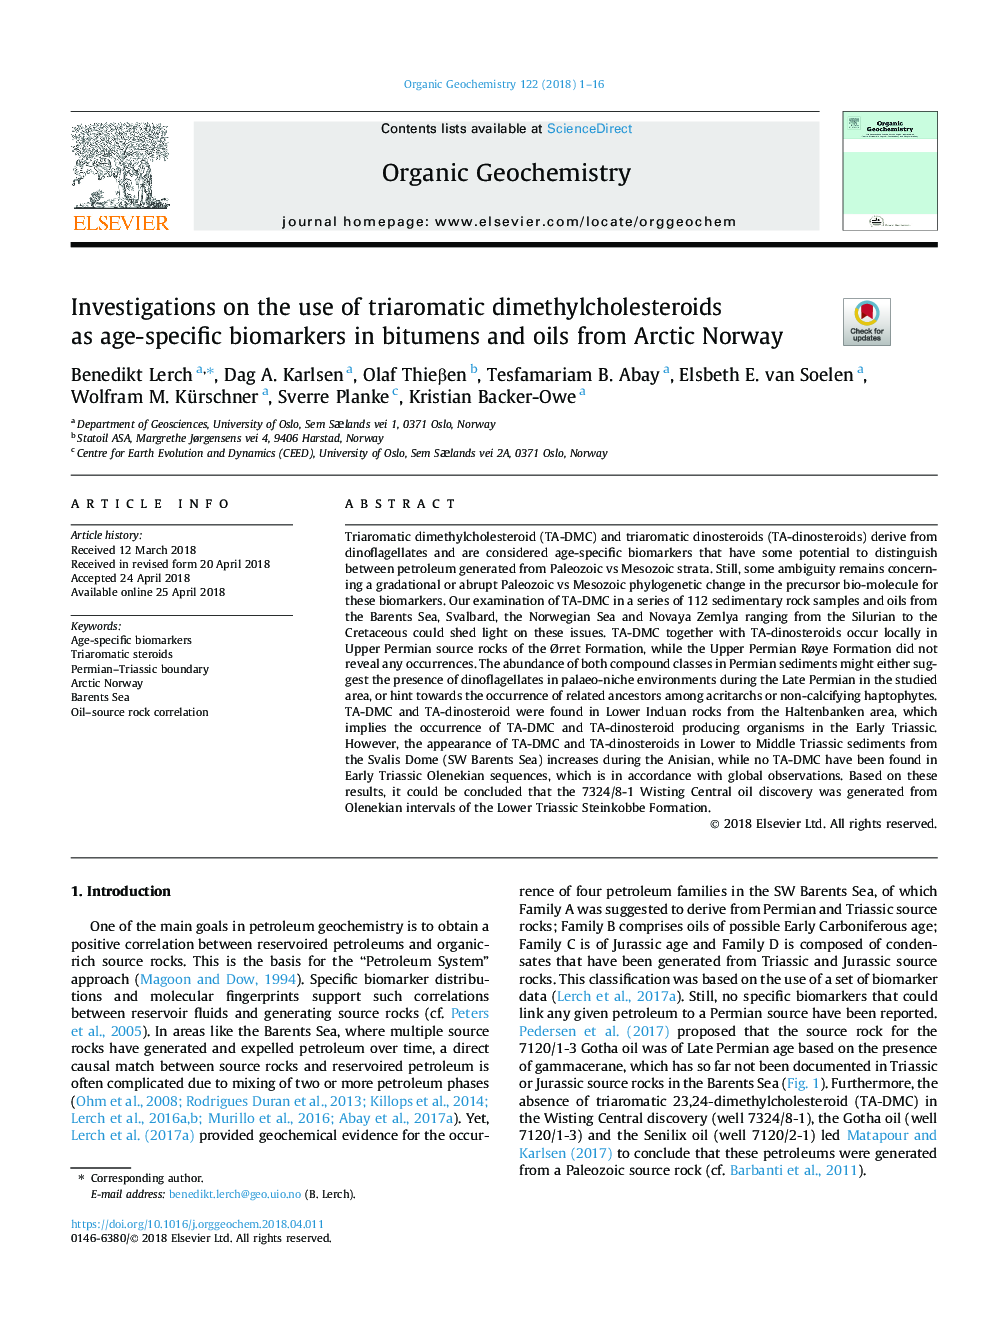 تحقیقات در مورد استفاده از دی متیل کلسترویید های سه گانه به عنوان سن سنجی های زیستی در بوته ها و روغن های قطب شمال نروژ 